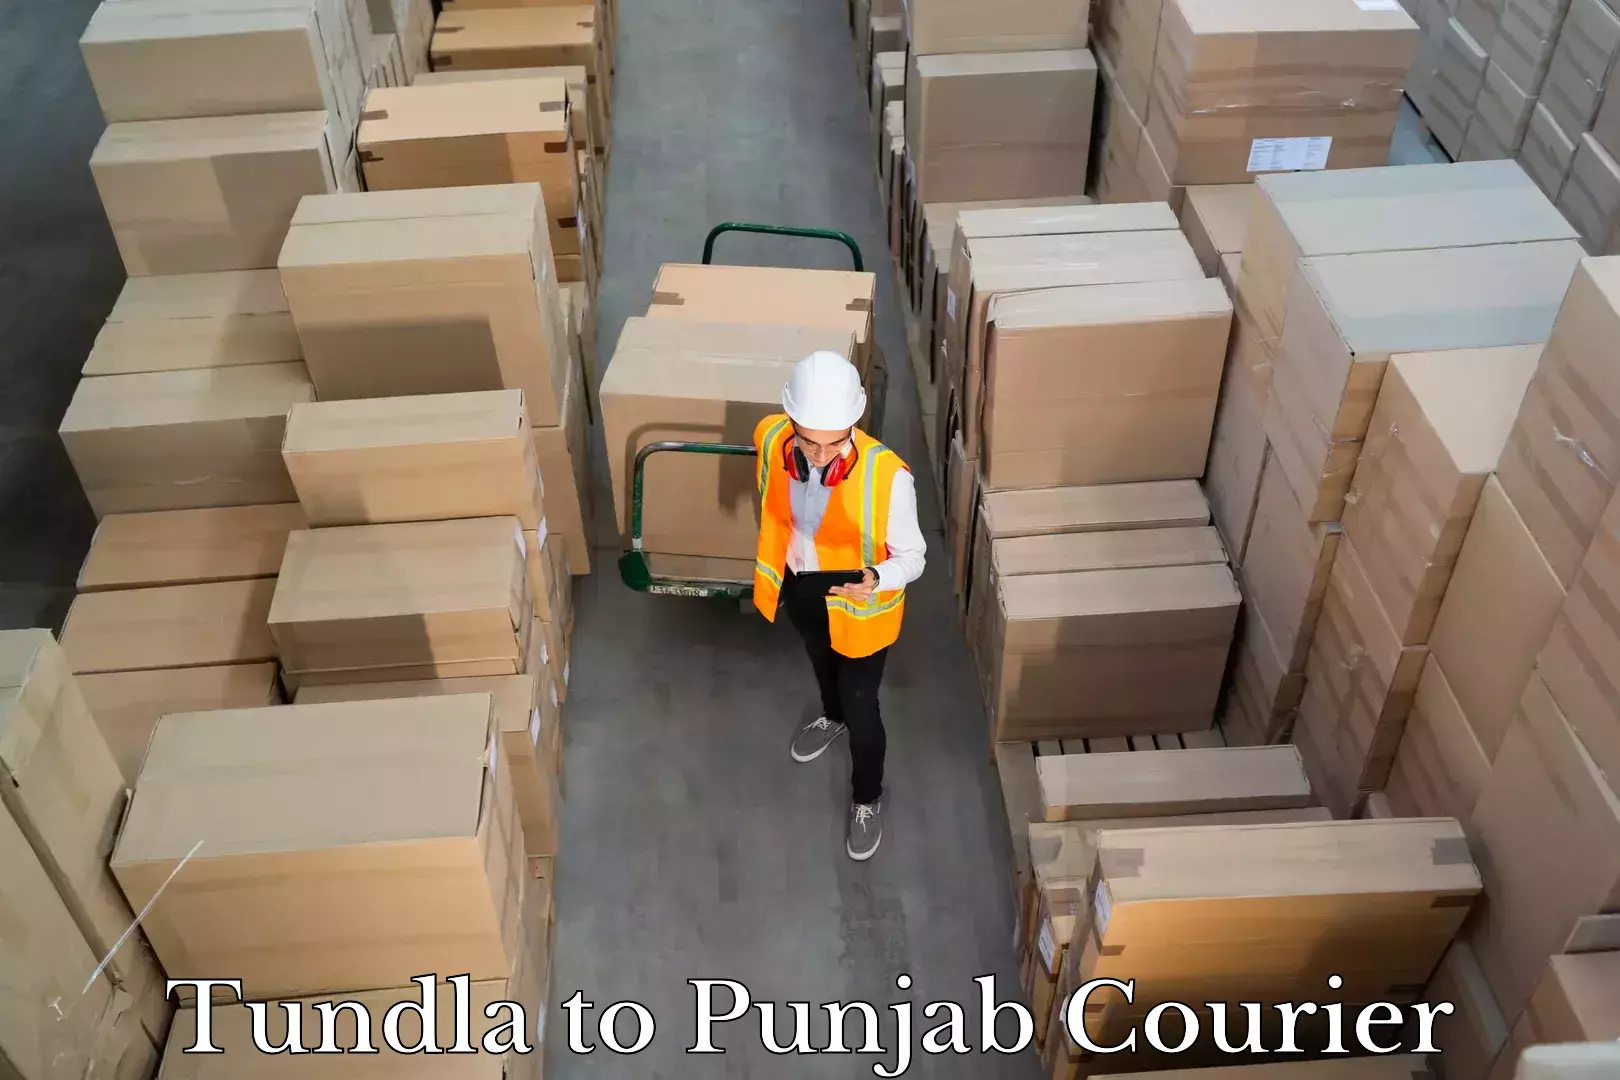 Doorstep luggage pickup Tundla to Punjab